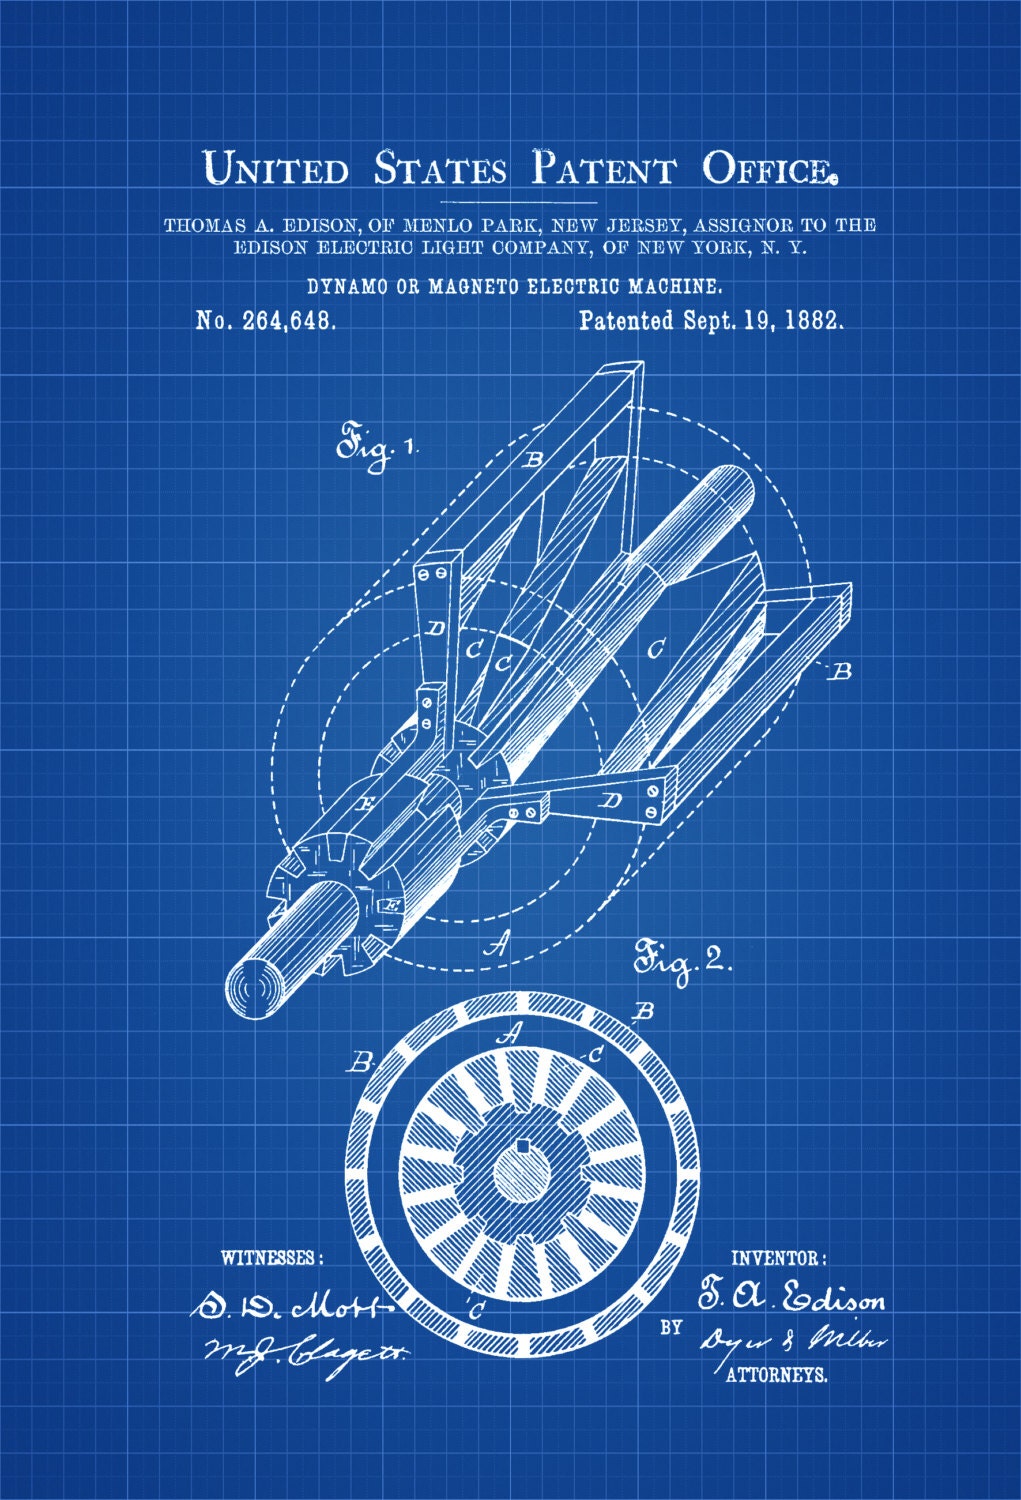 Edison Dynamo Electric Generator Patent Patent Prints